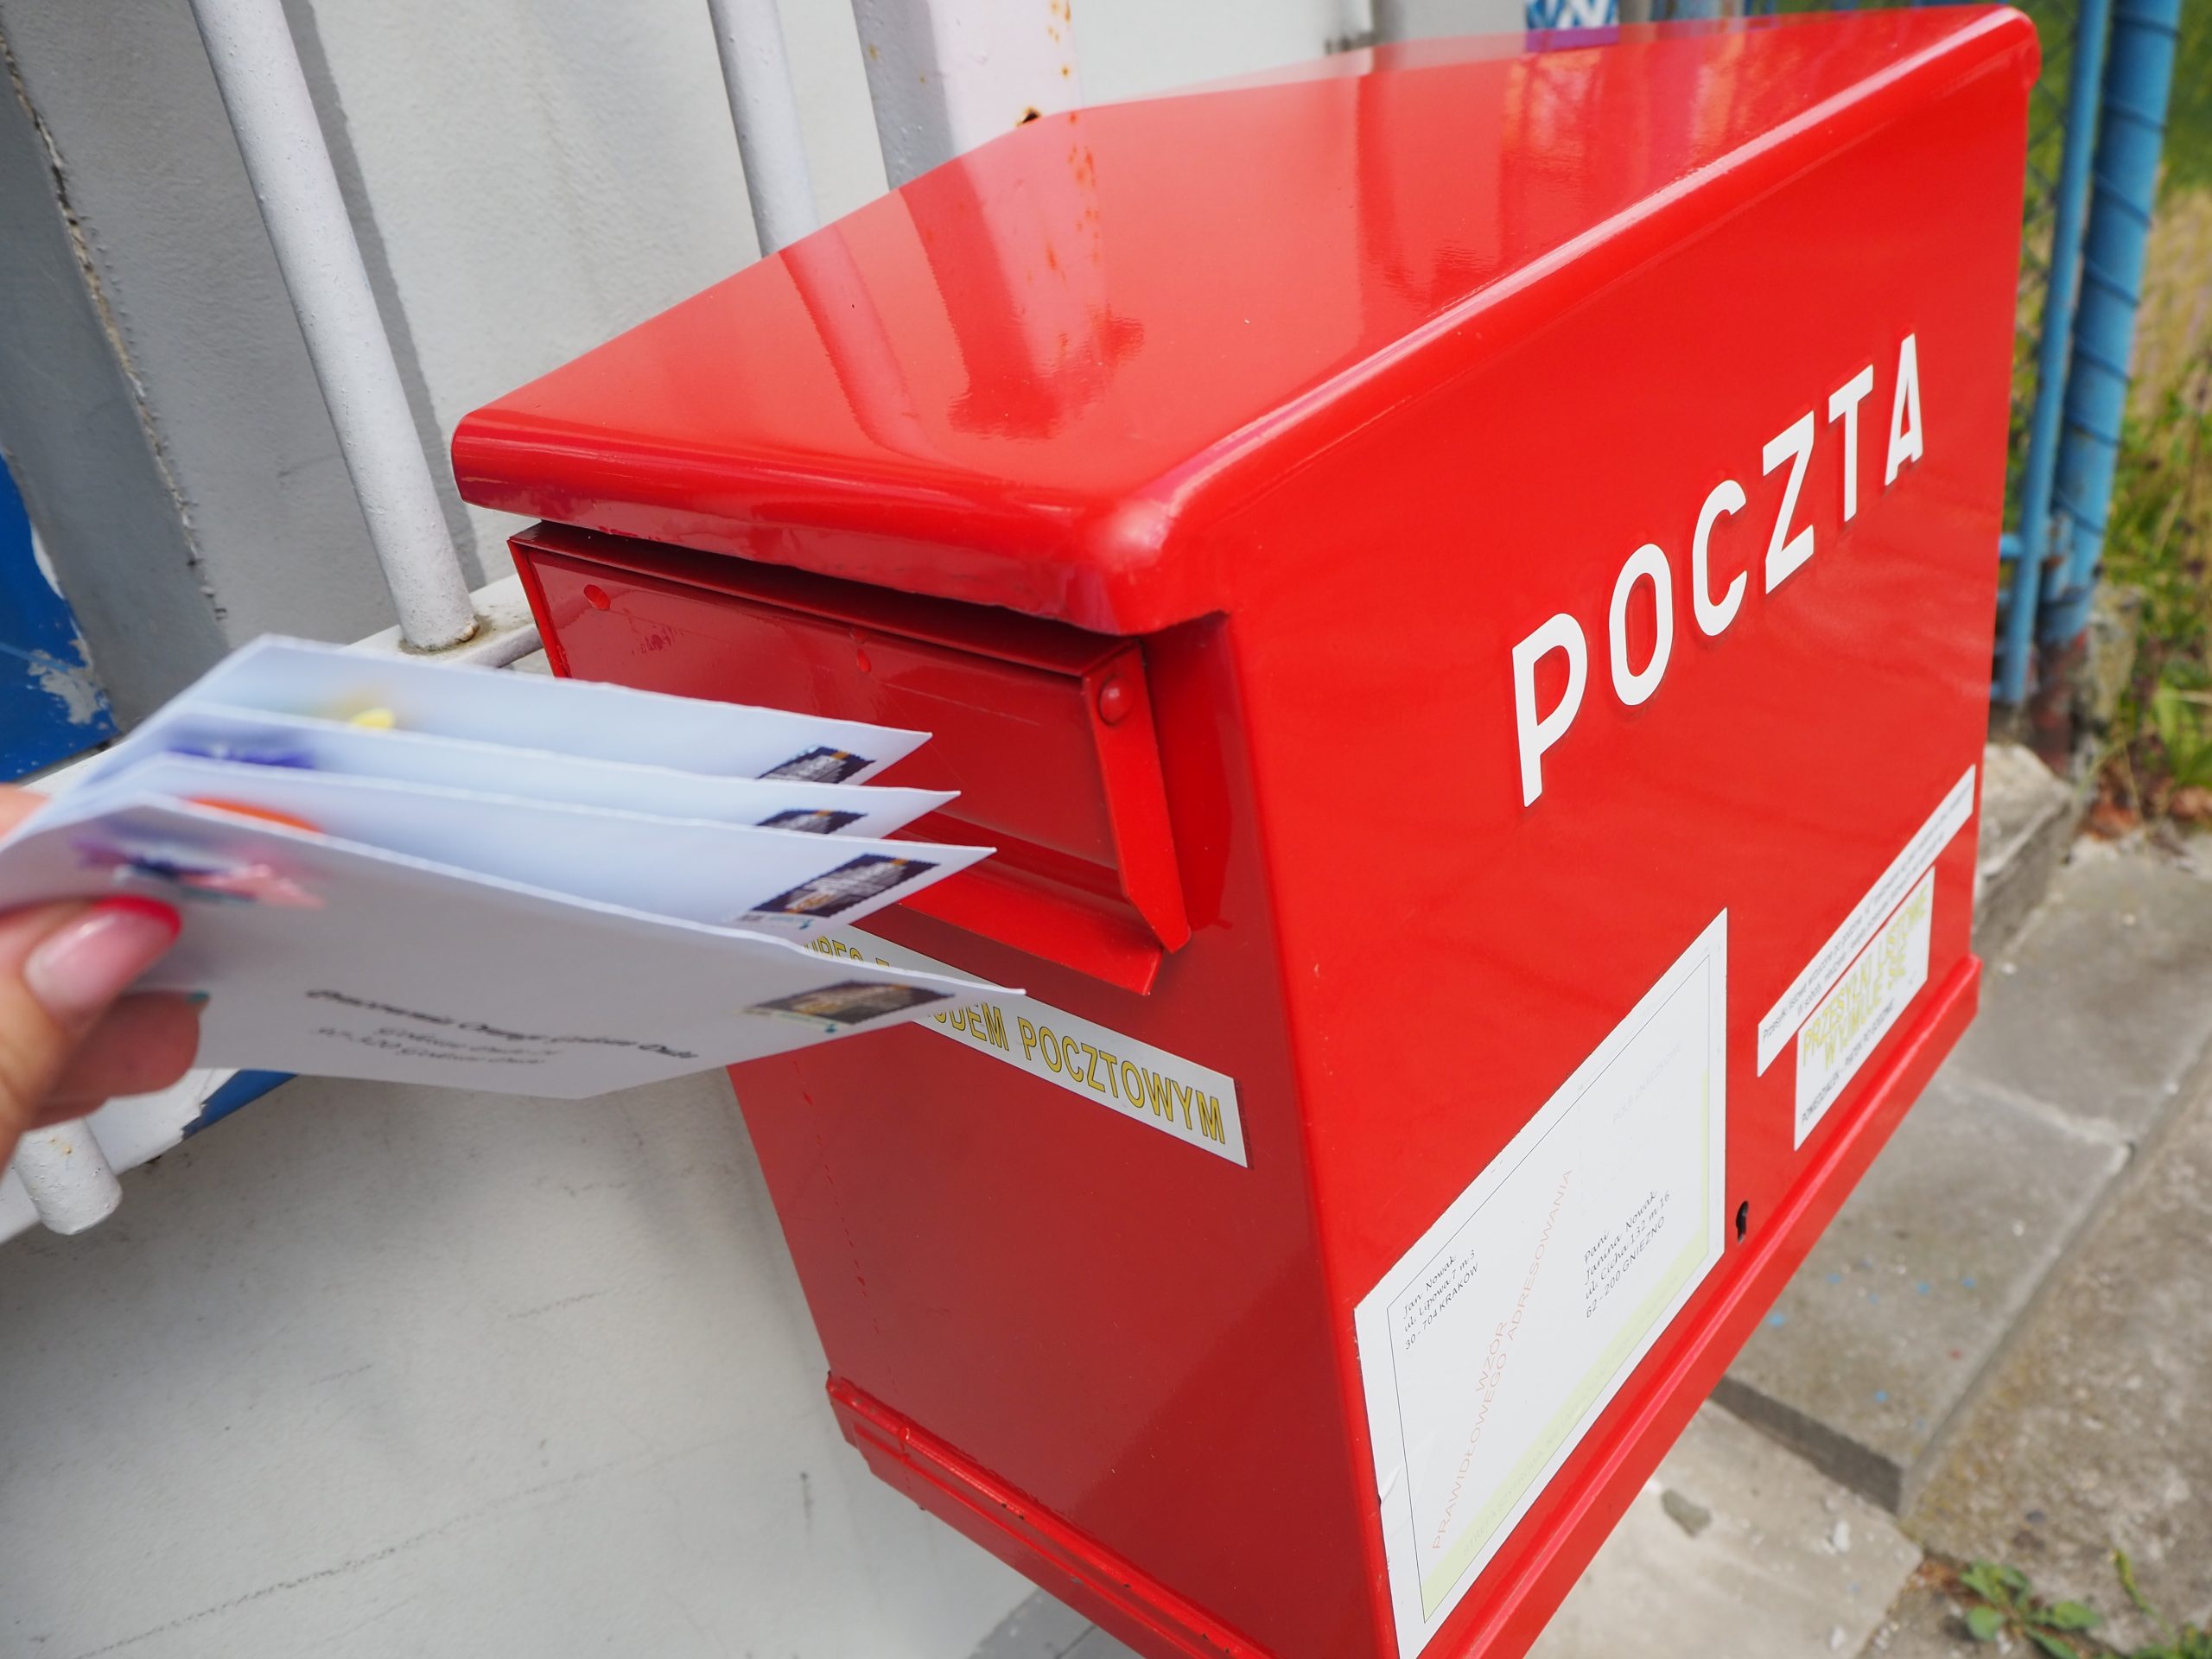 na zdjęciu czerwona skrzynka z napisem poczta do której ktoś wrzuca cztery listy